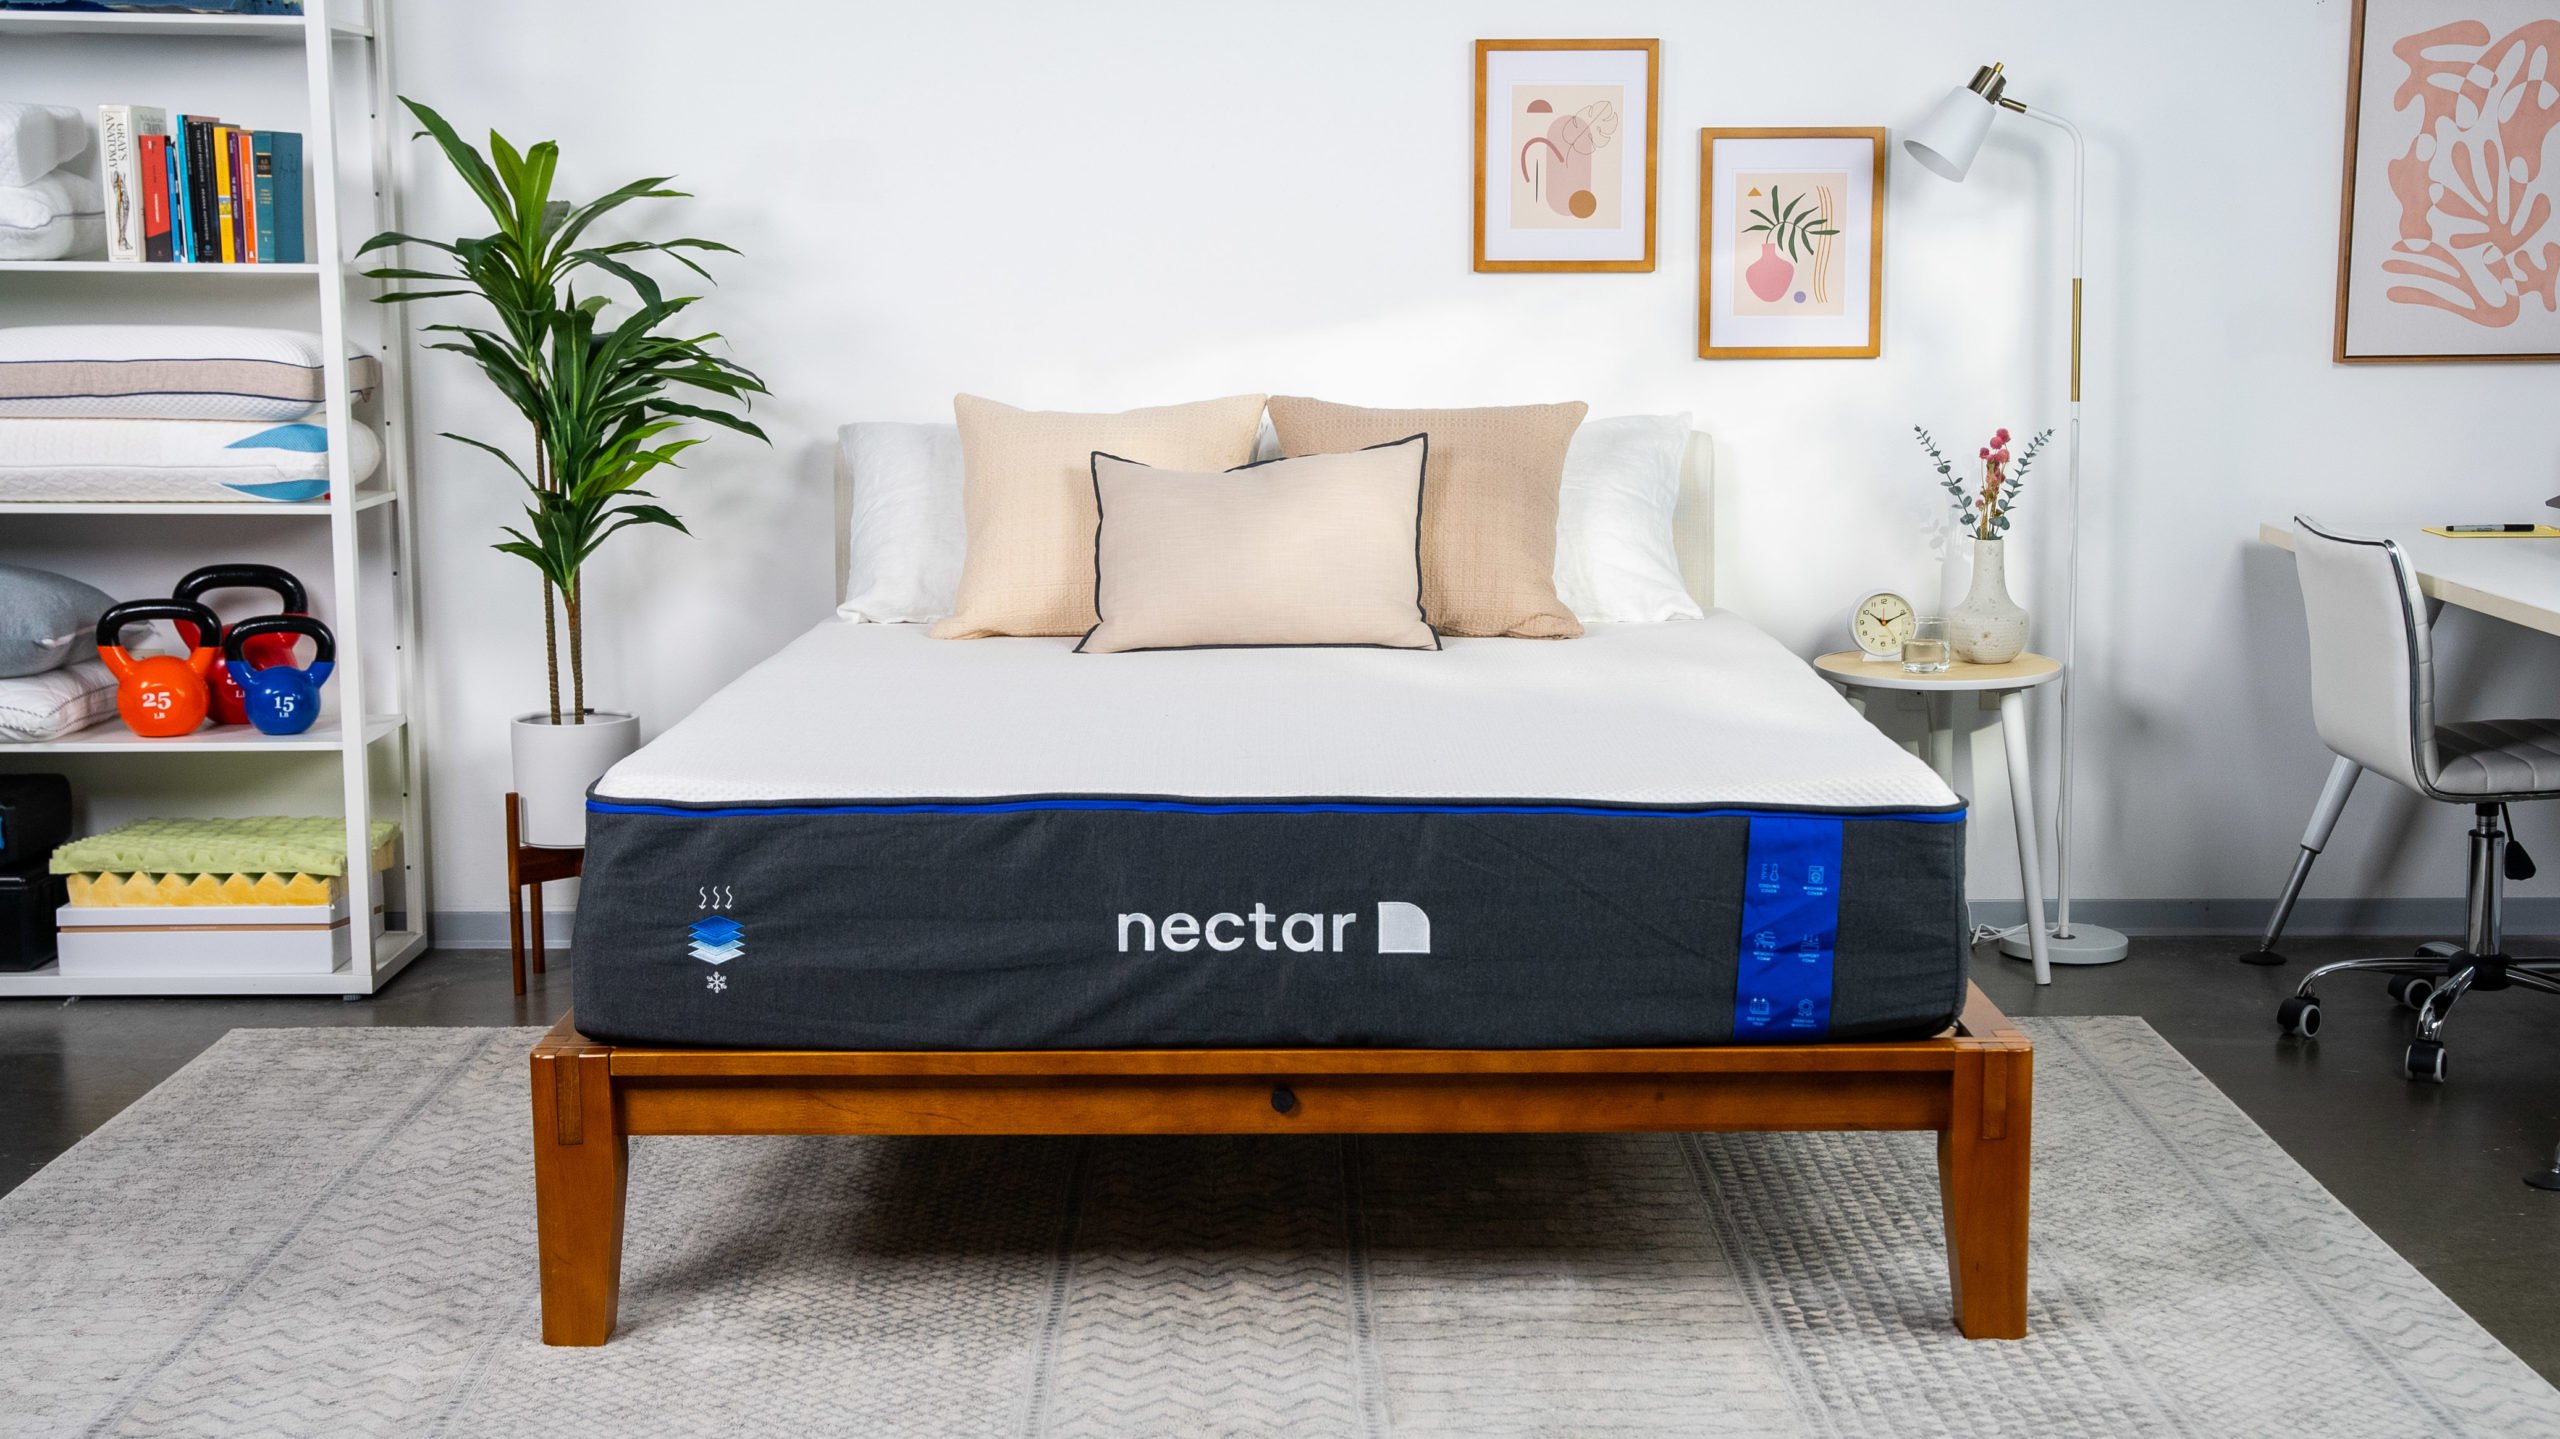 nectar sleep mattress dontion